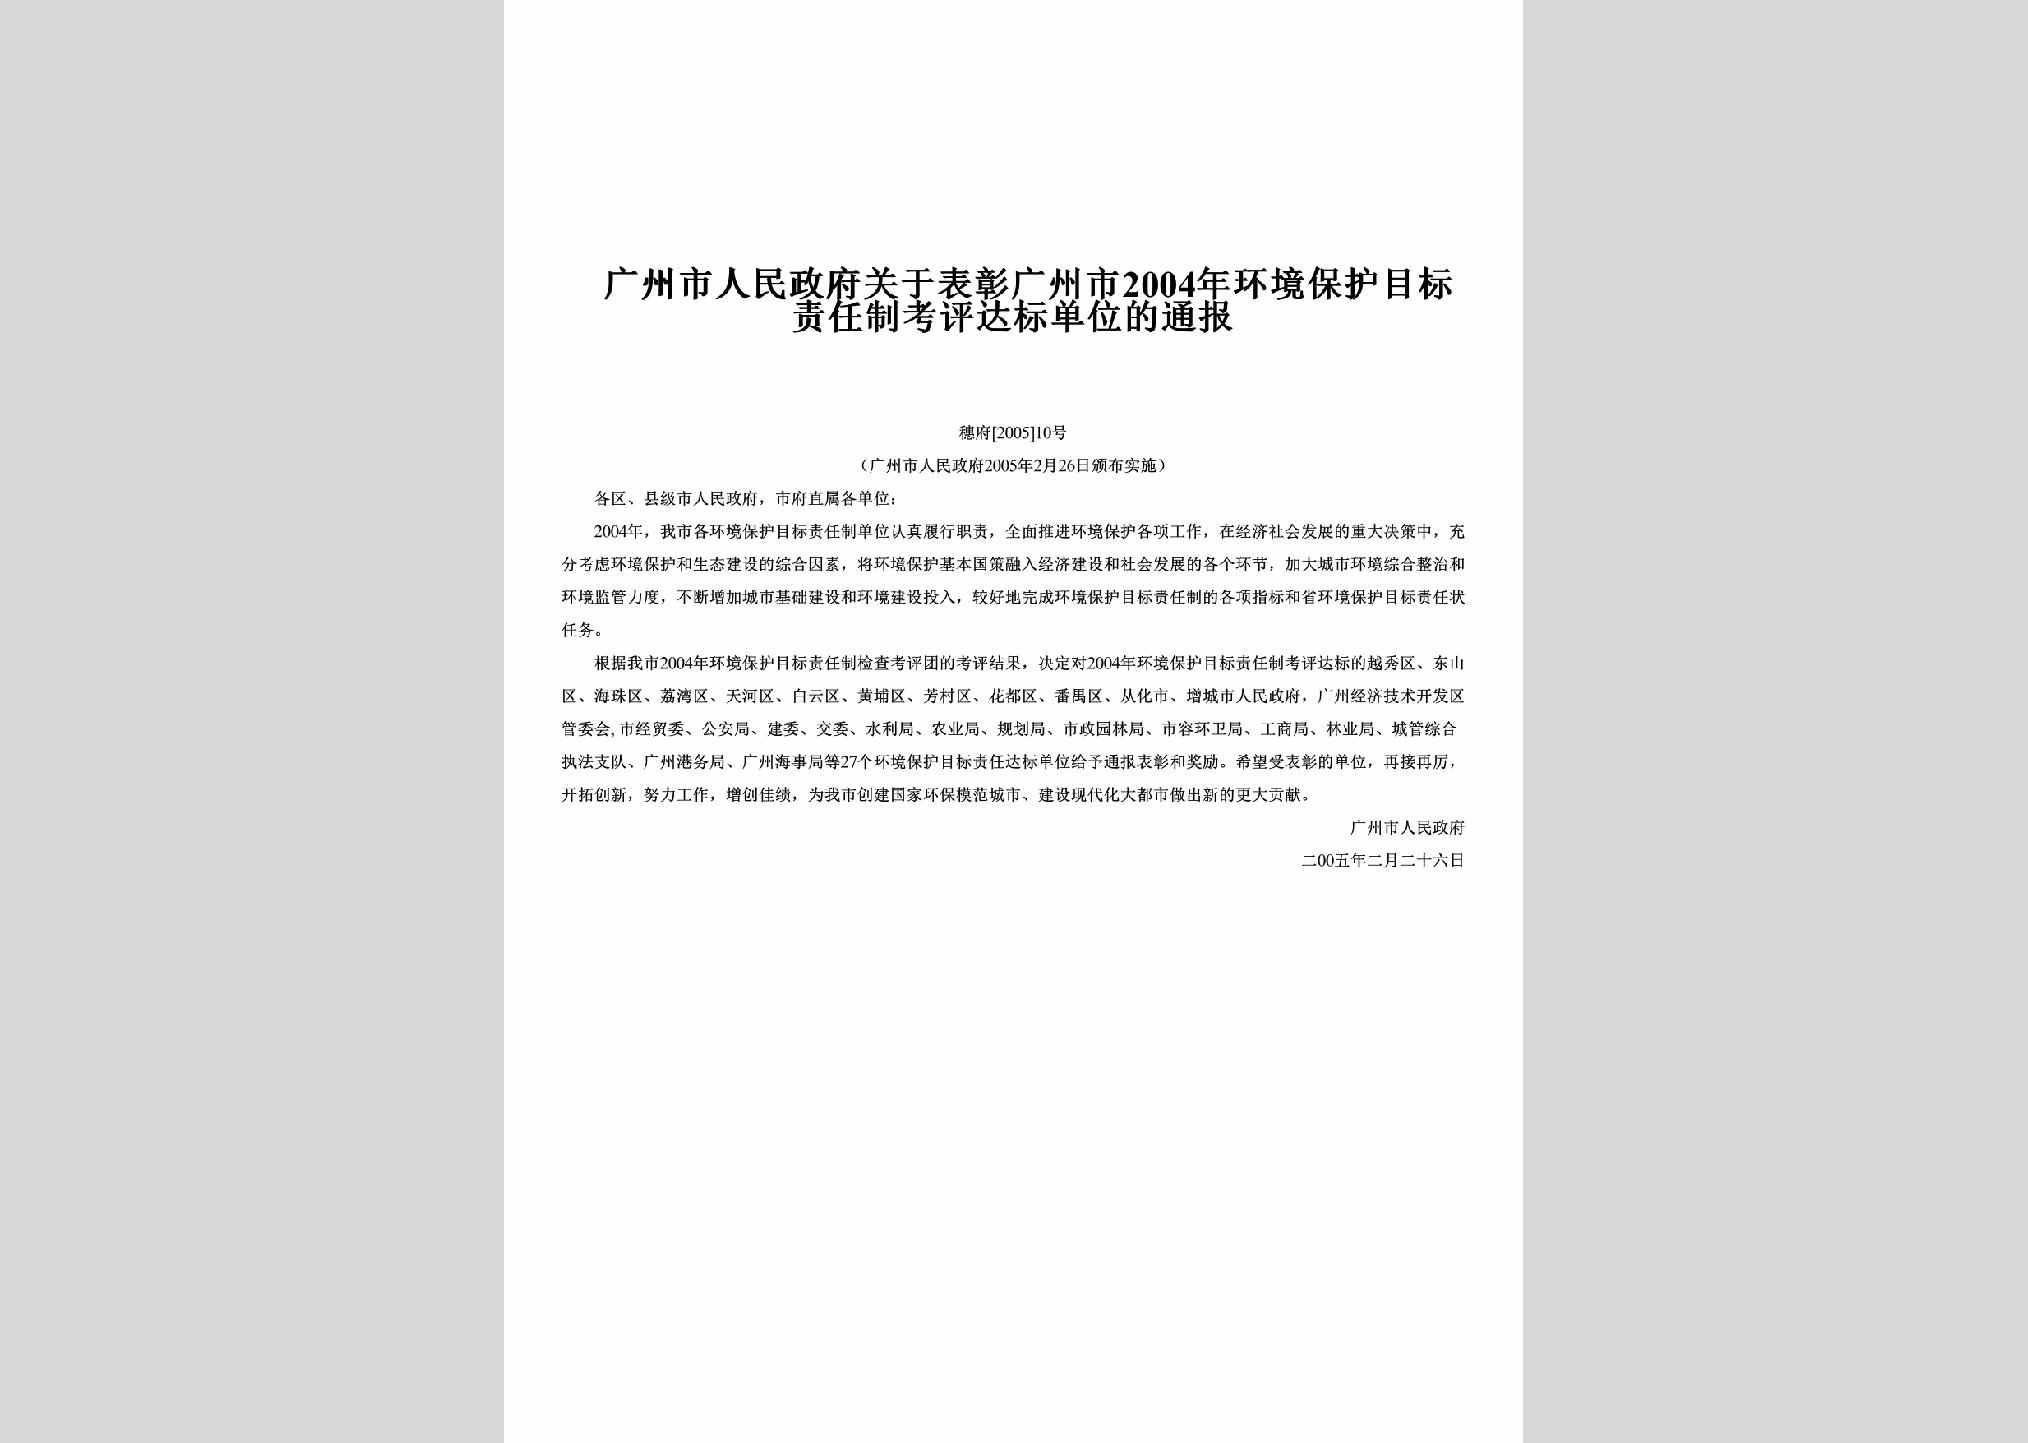 穗府[2005]10号：关于表彰广州市2004年环境保护目标责任制考评达标单位的通报